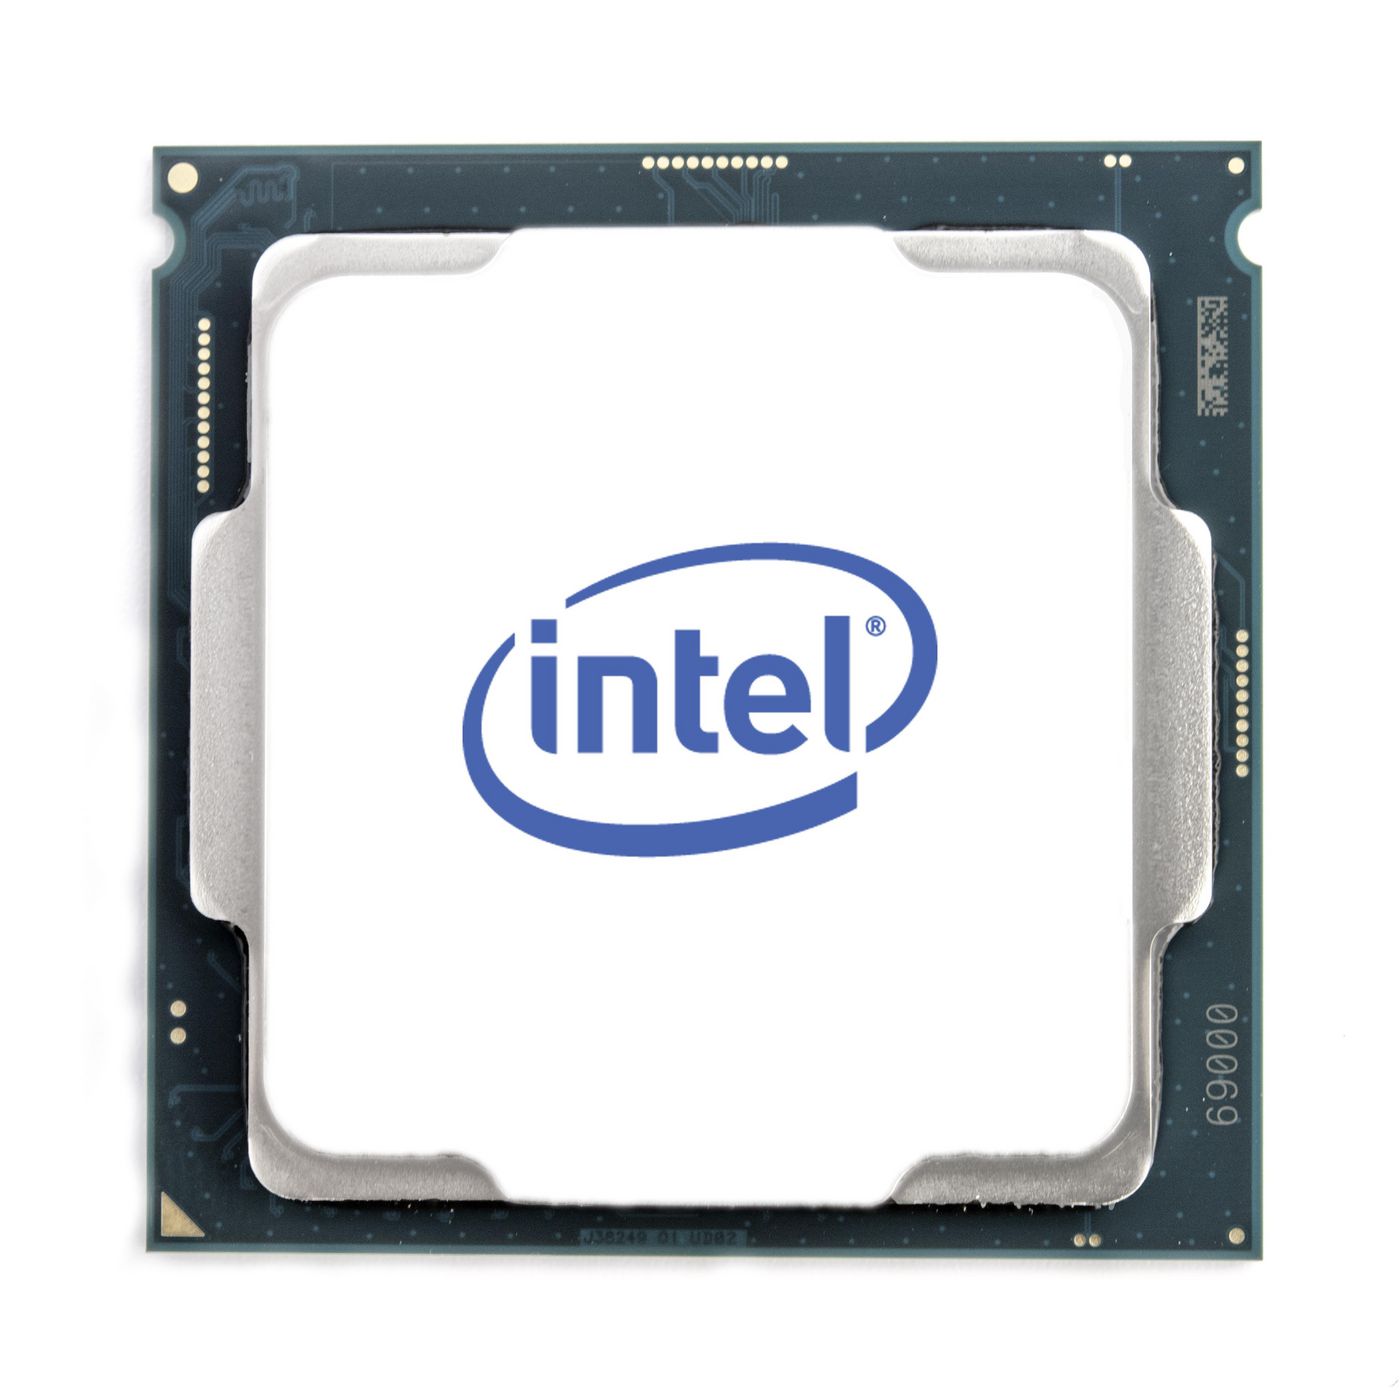 Intel CD8069504201201 W126171658 Xeon 8260M processor 2.4 GHz 